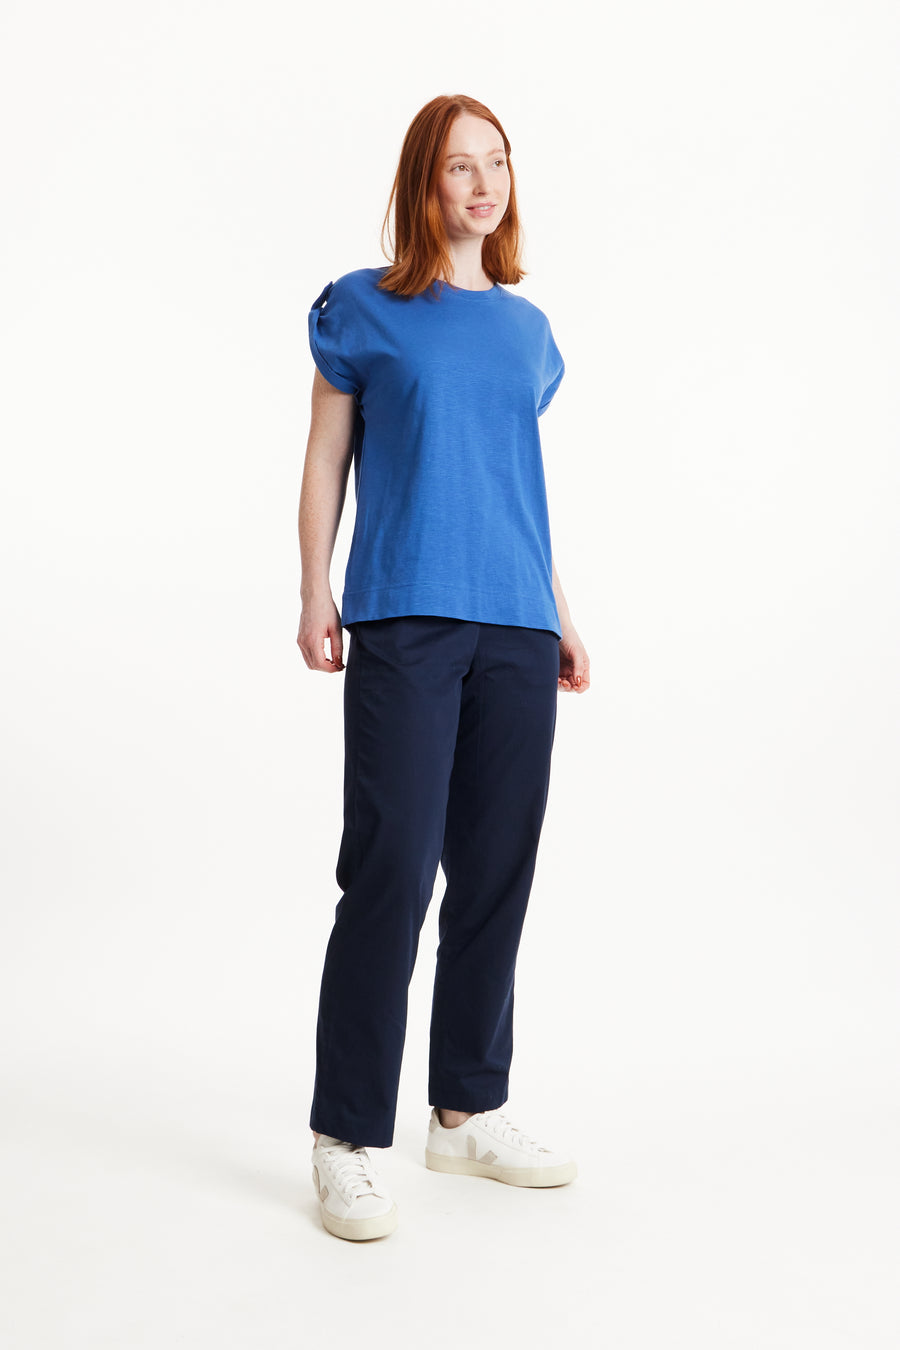 People Tree Fairer Handel, ethisches und nachhaltiges Jayne Slub -T -Shirt in blau 100% Bio -zertifizierter Baumwolle